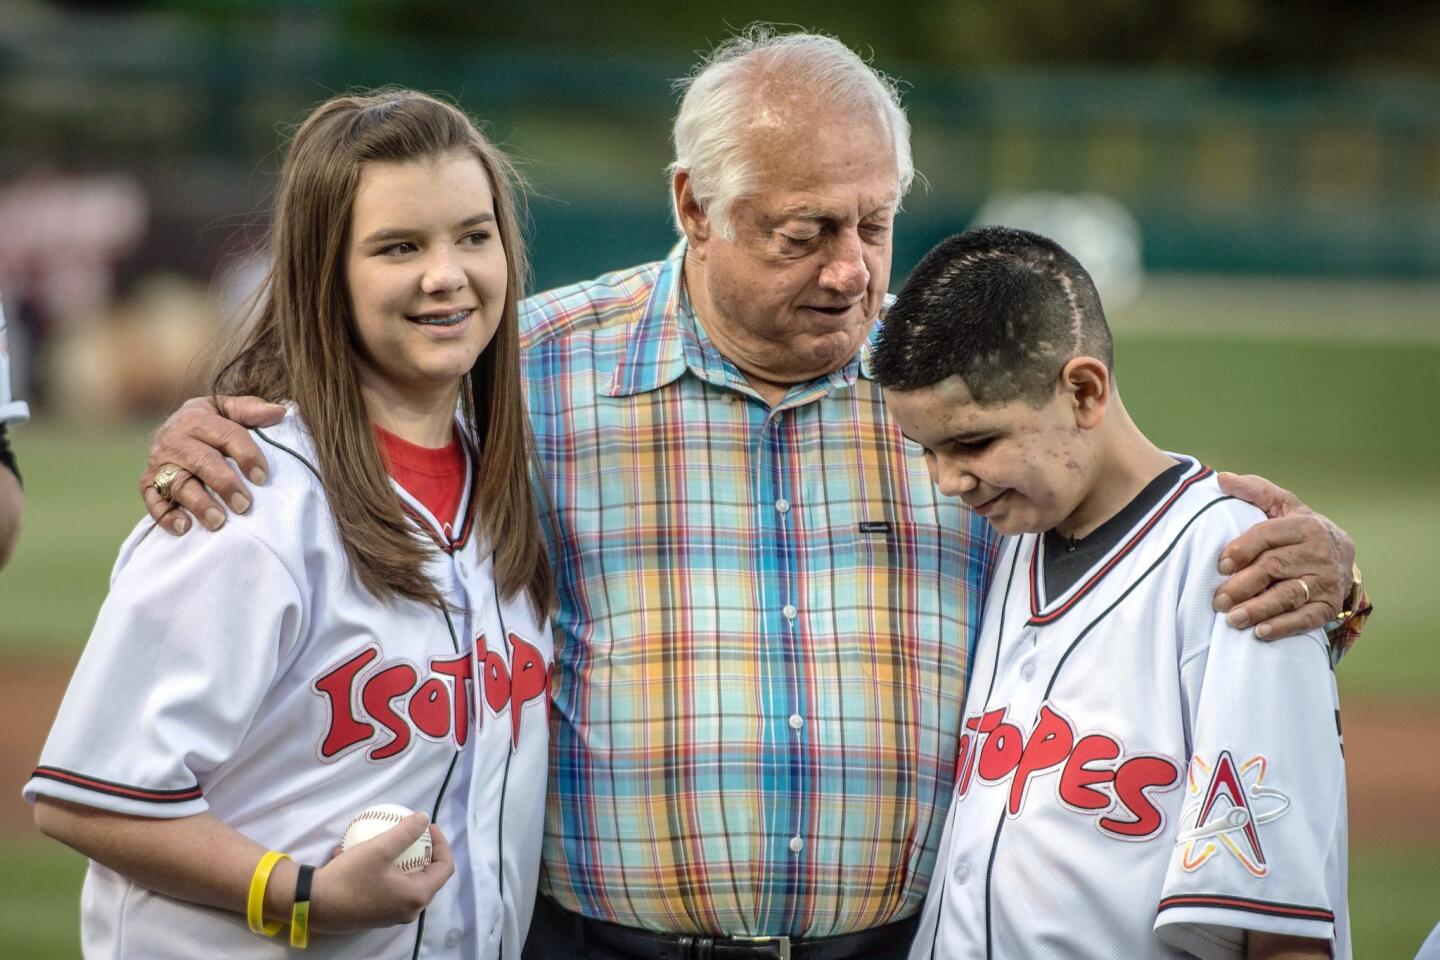 Tommy Lasorda still inspires joy in baseball